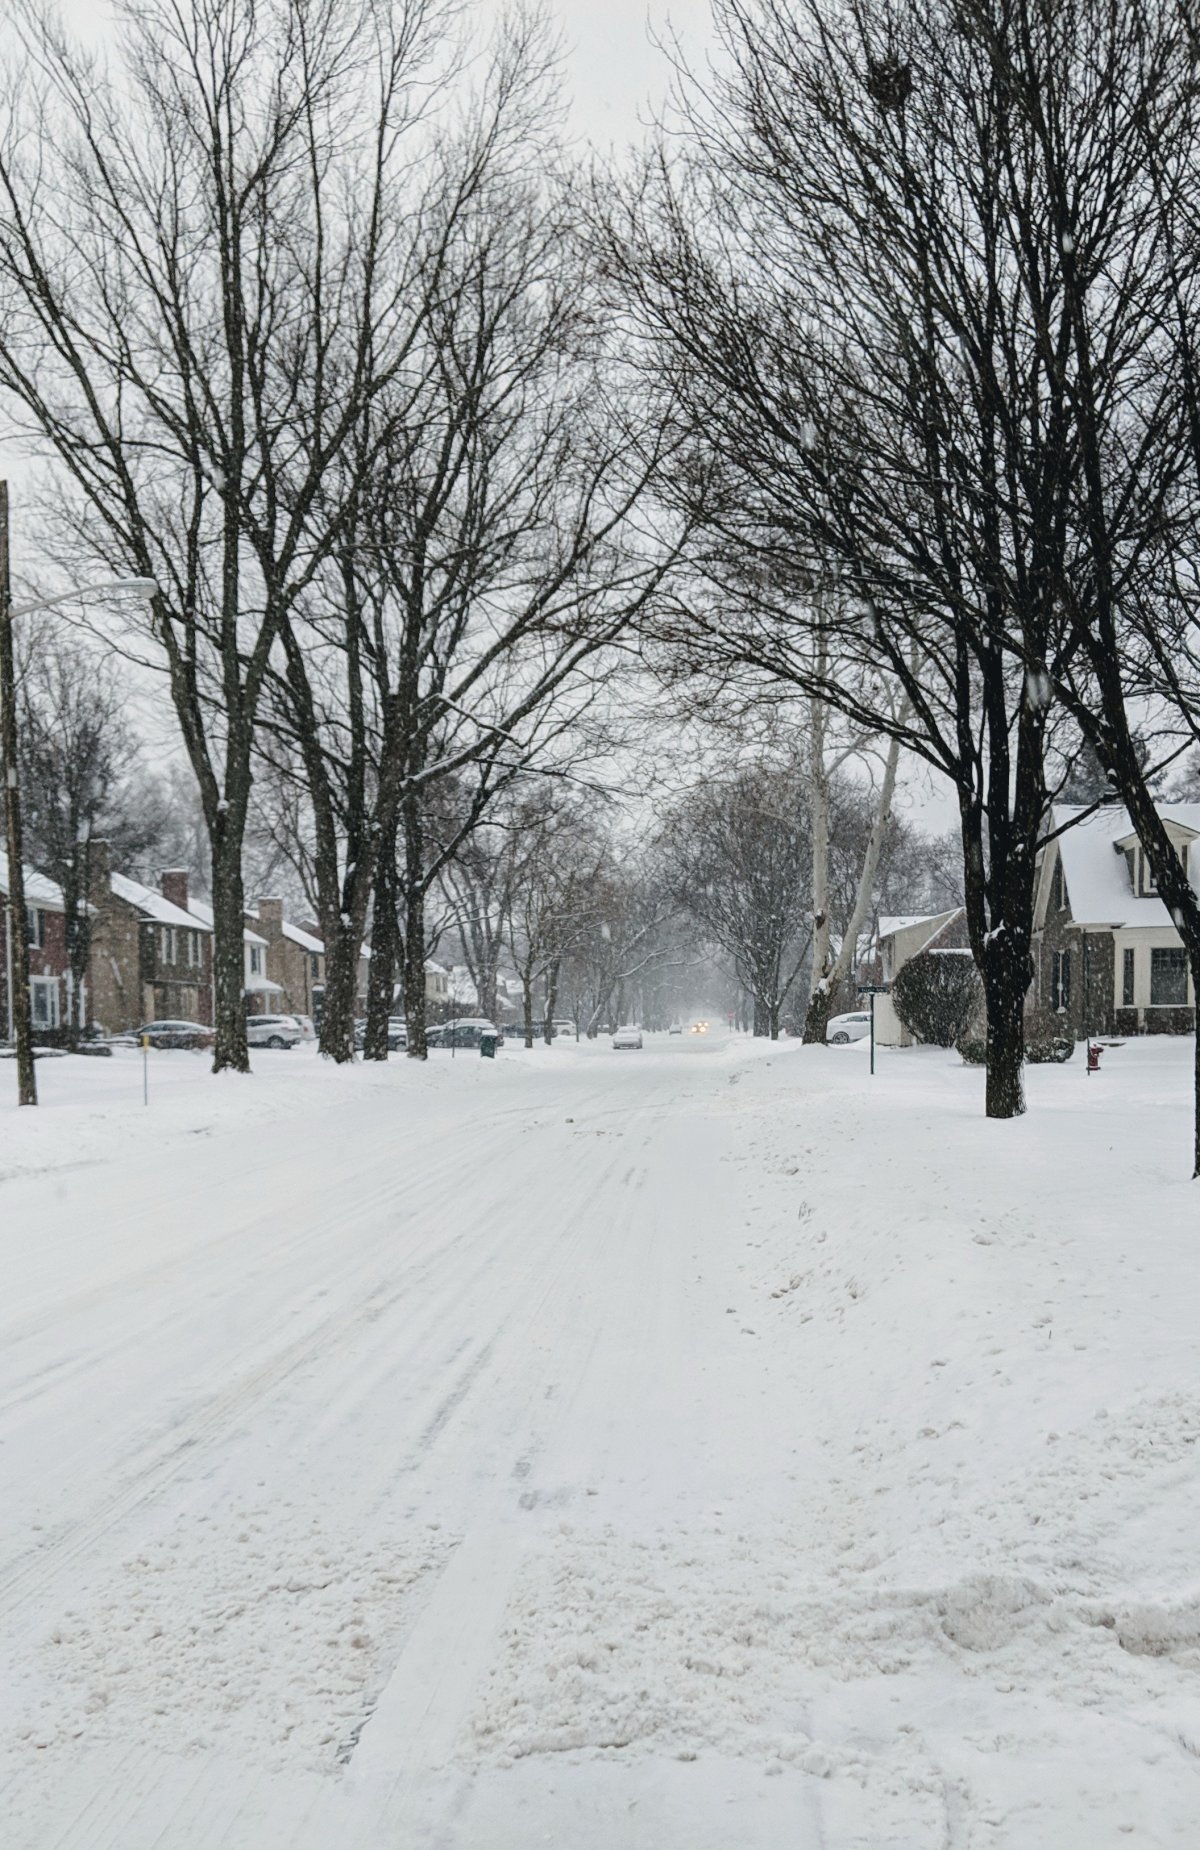 Winter street snow scene pictures